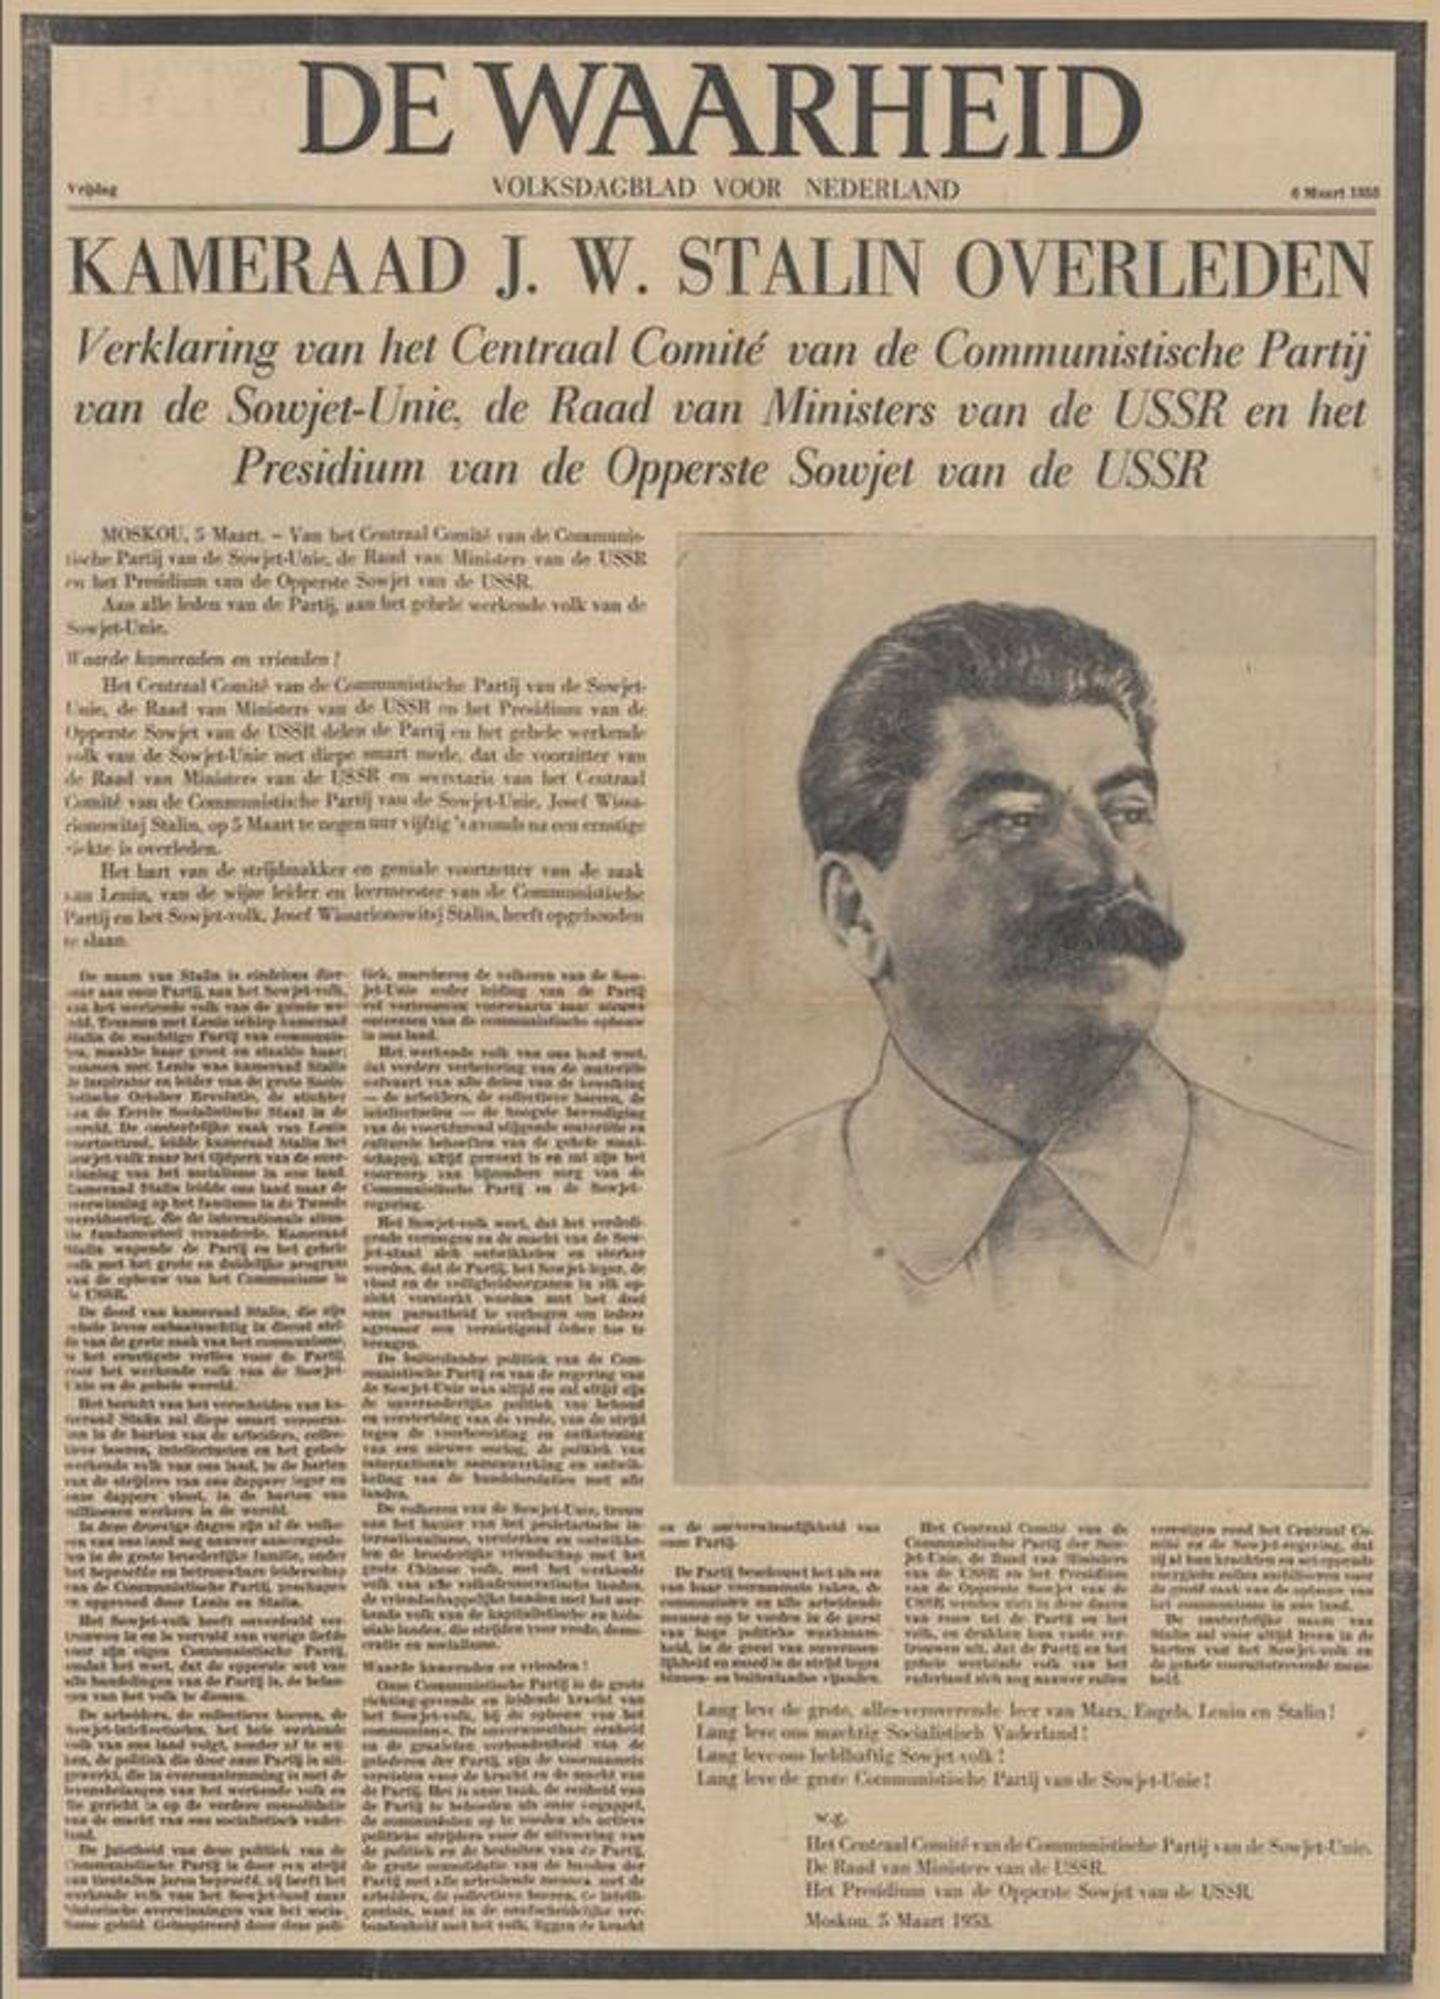 De voorpagina van het communistische dagblad De Waarheid meldt in een zwart omrand bericht de dood van Stalin.